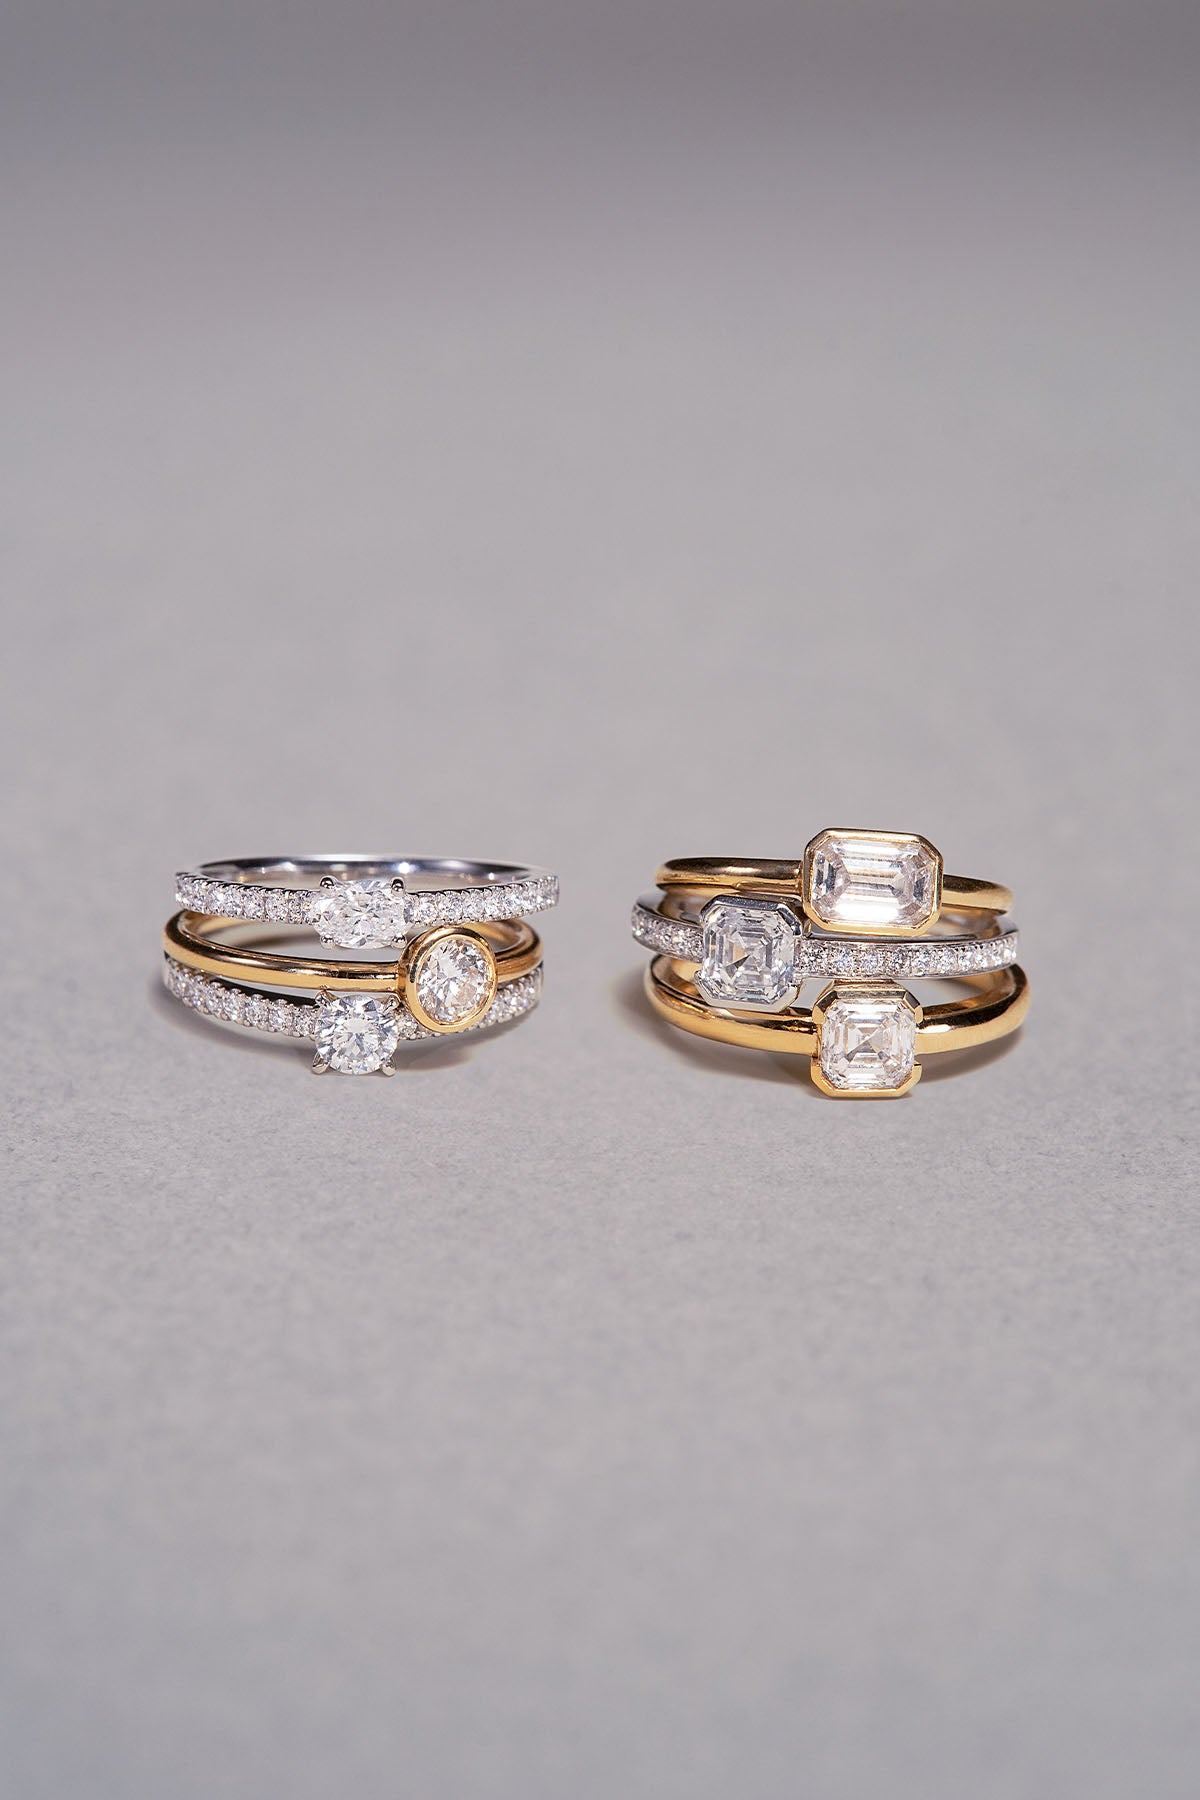 Asscher Diamond Ring (0.35ct) - APM Monaco UK